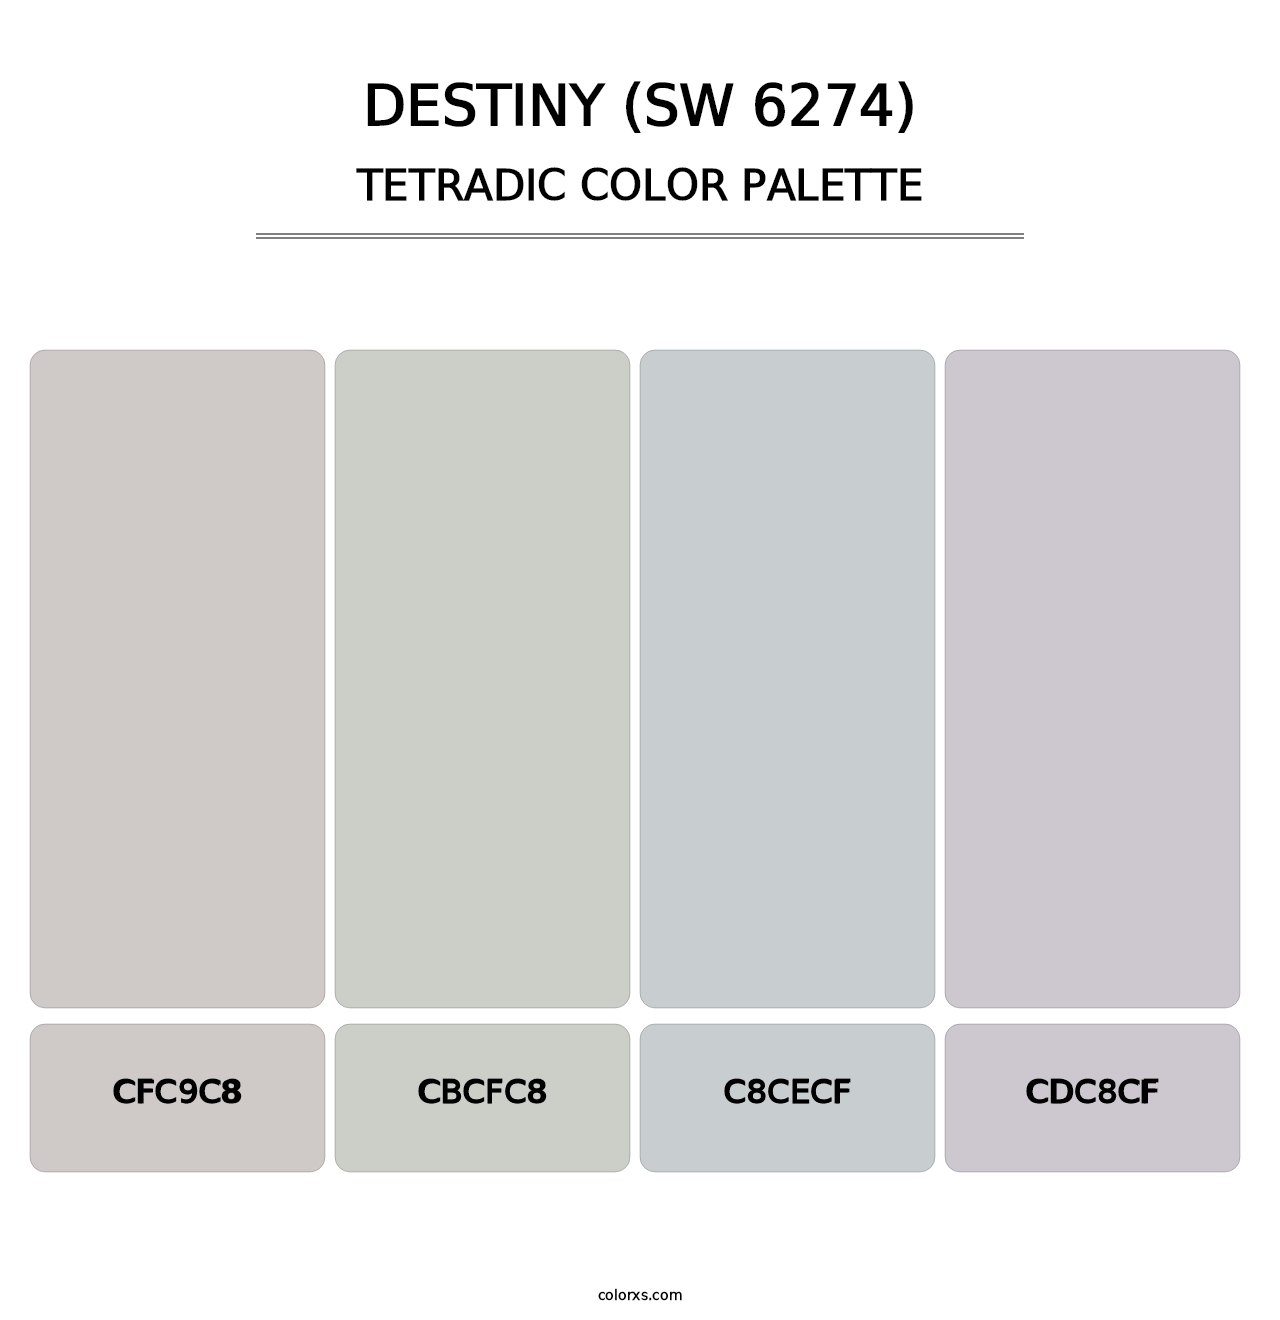 Destiny (SW 6274) - Tetradic Color Palette